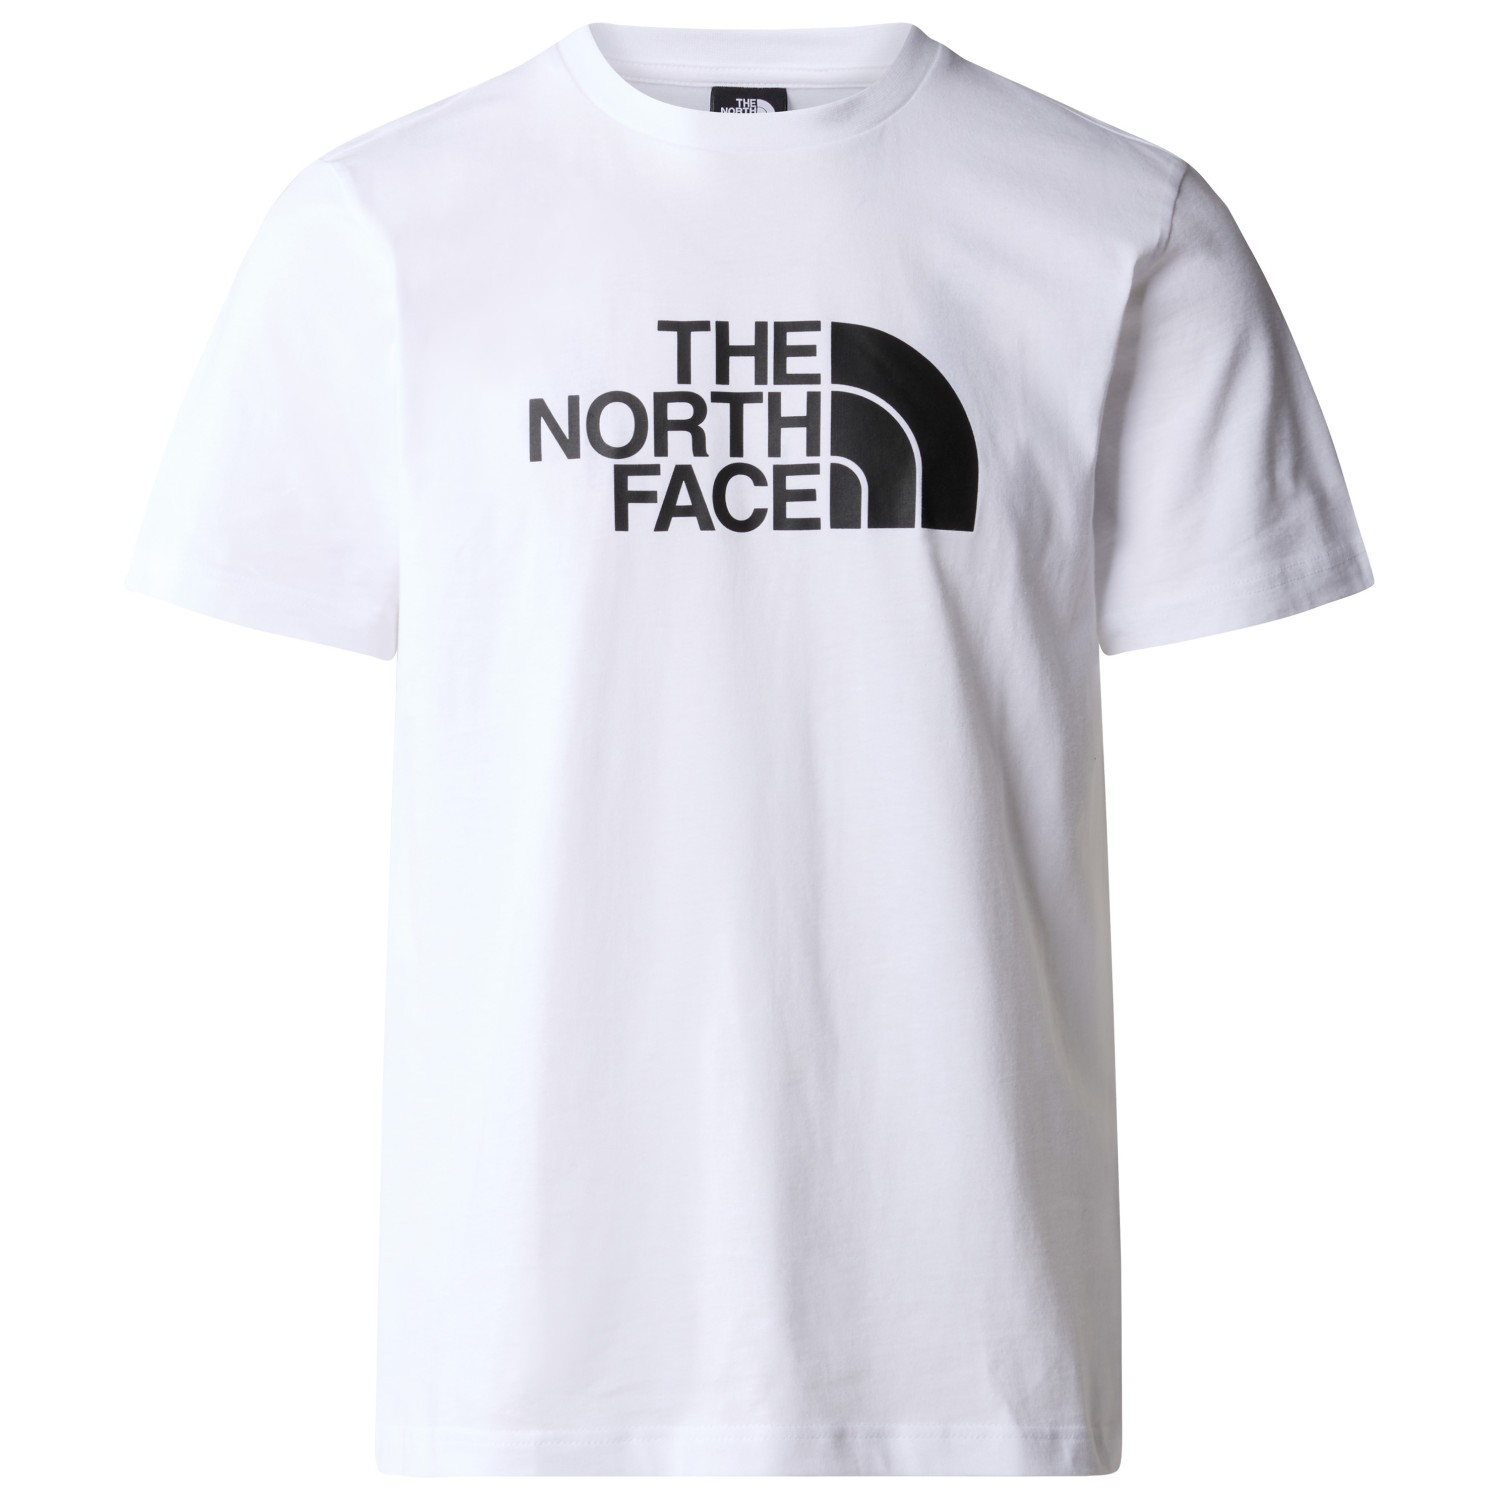 футболка the north face s s mountain line tee цвет tnf black Футболка The North Face S/S Easy Tee, цвет TNF White